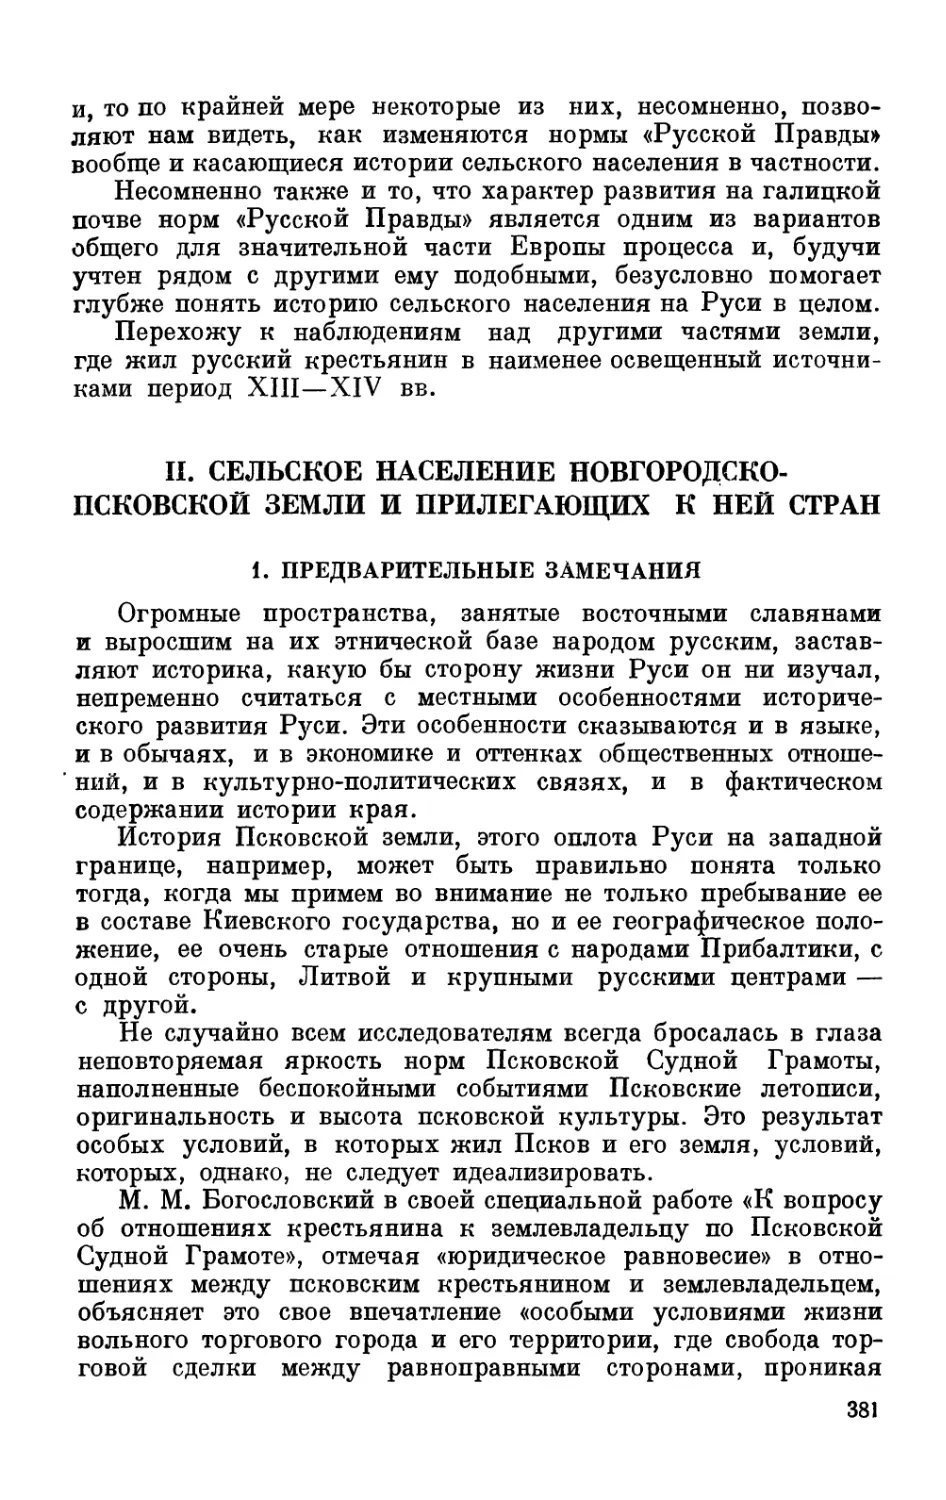 II. Сельское население Новгородско-Псковской земли и прилегающих к ней стран